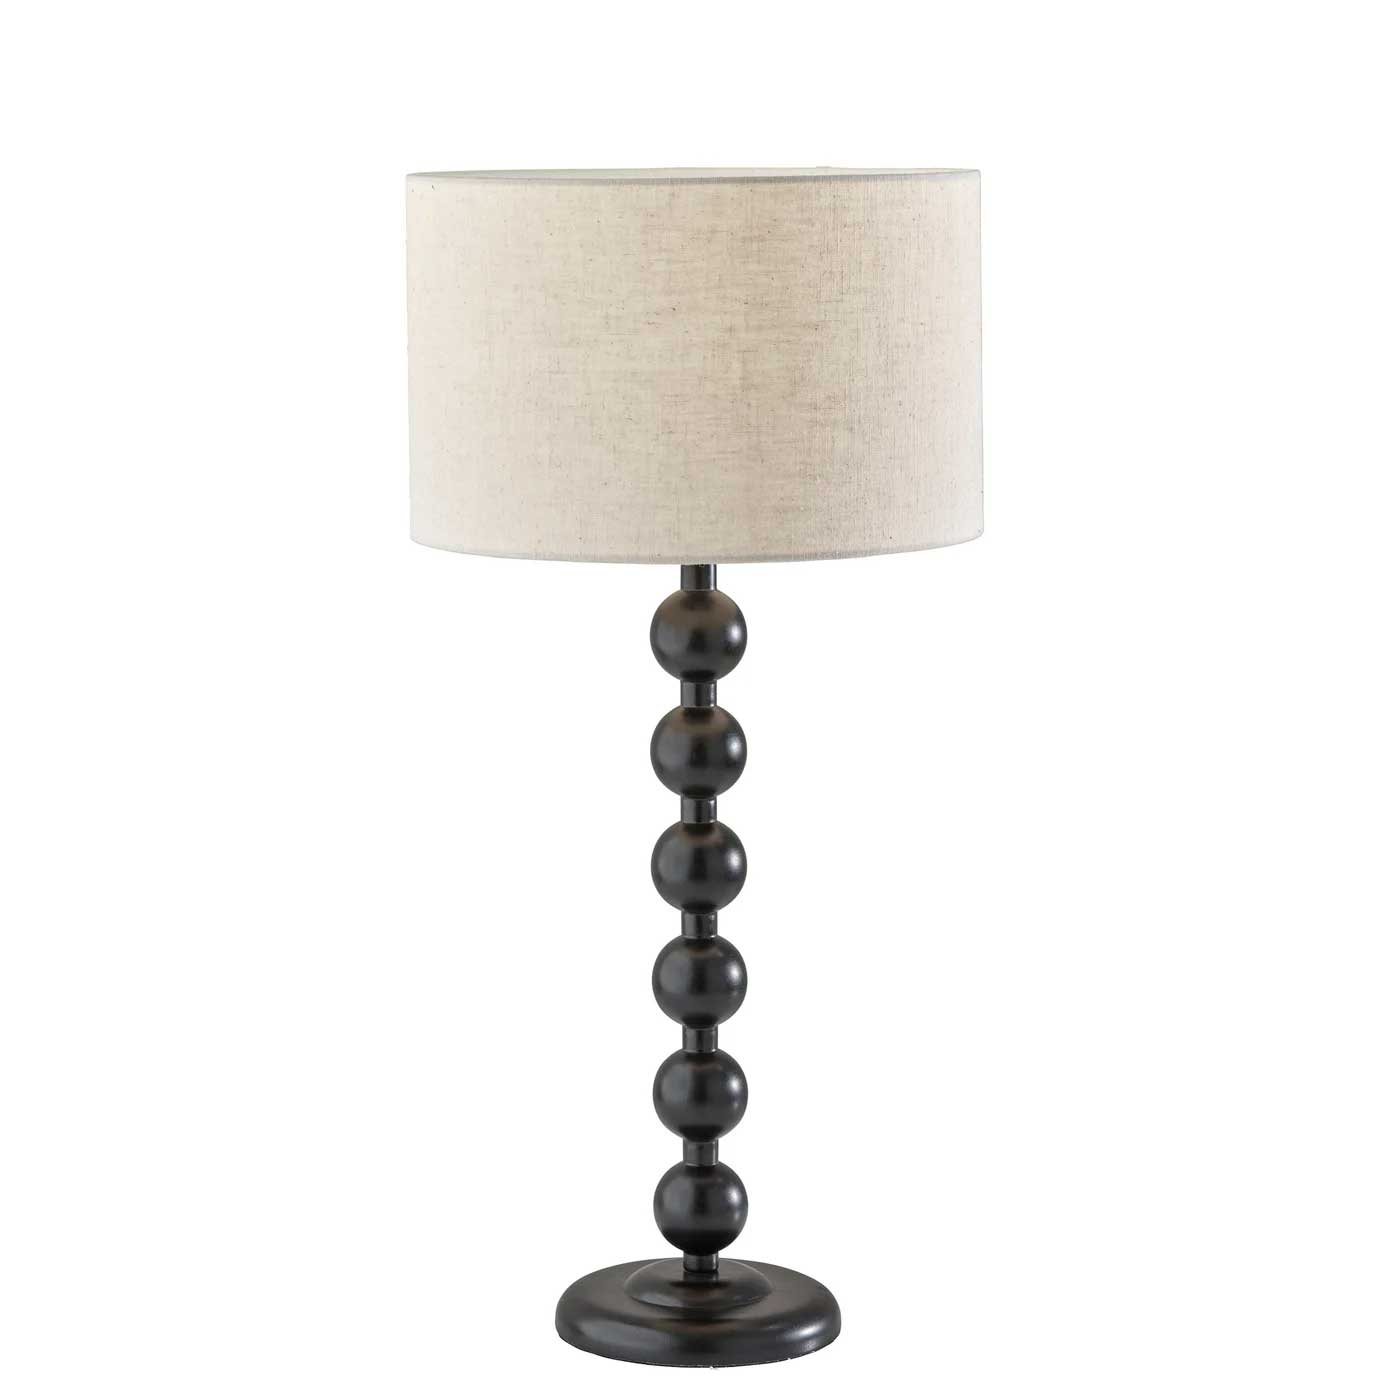 ORCHARD Lampe sur table Bois, Noir - 741809 | ADESSO